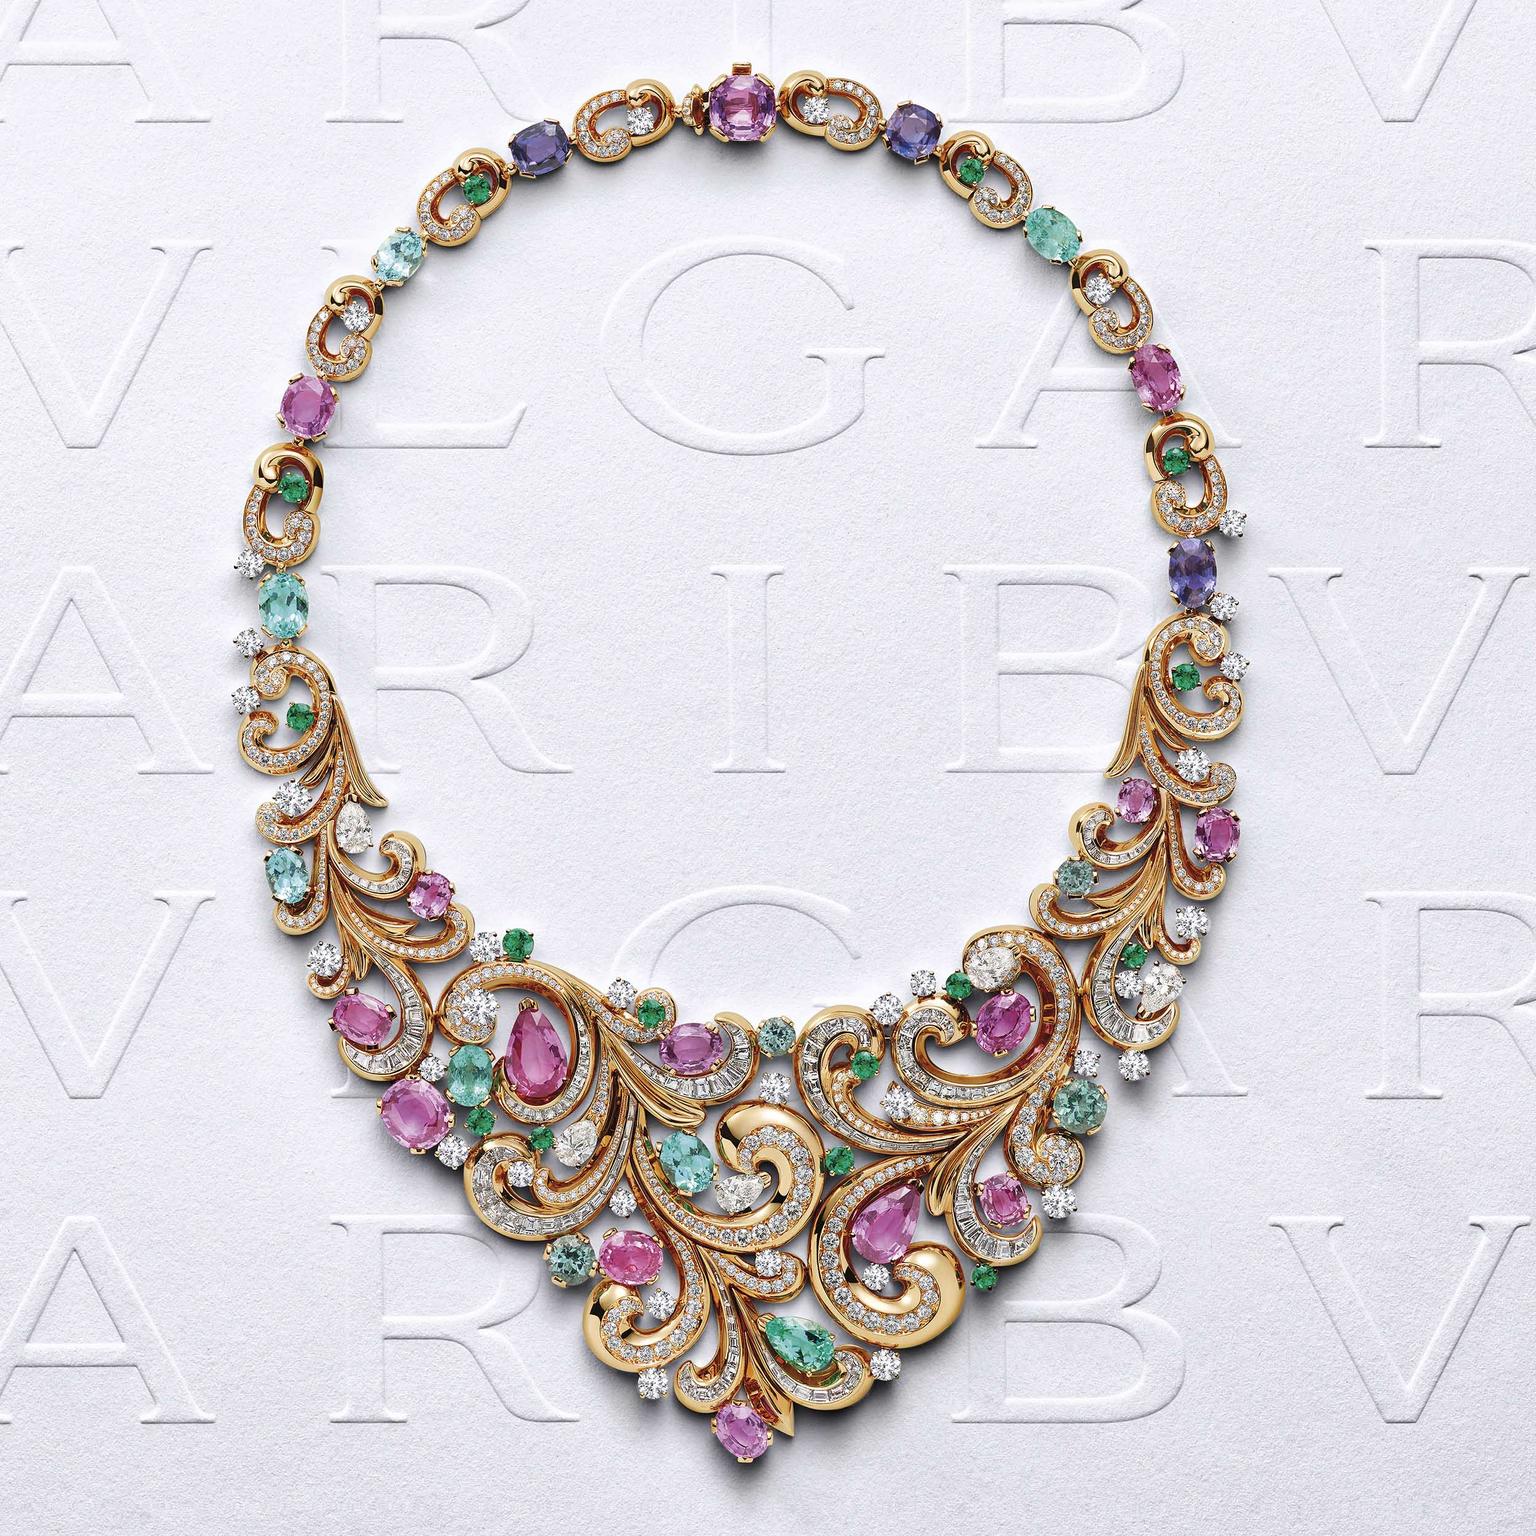 Bulgari Barocko Lady Arabesque necklace